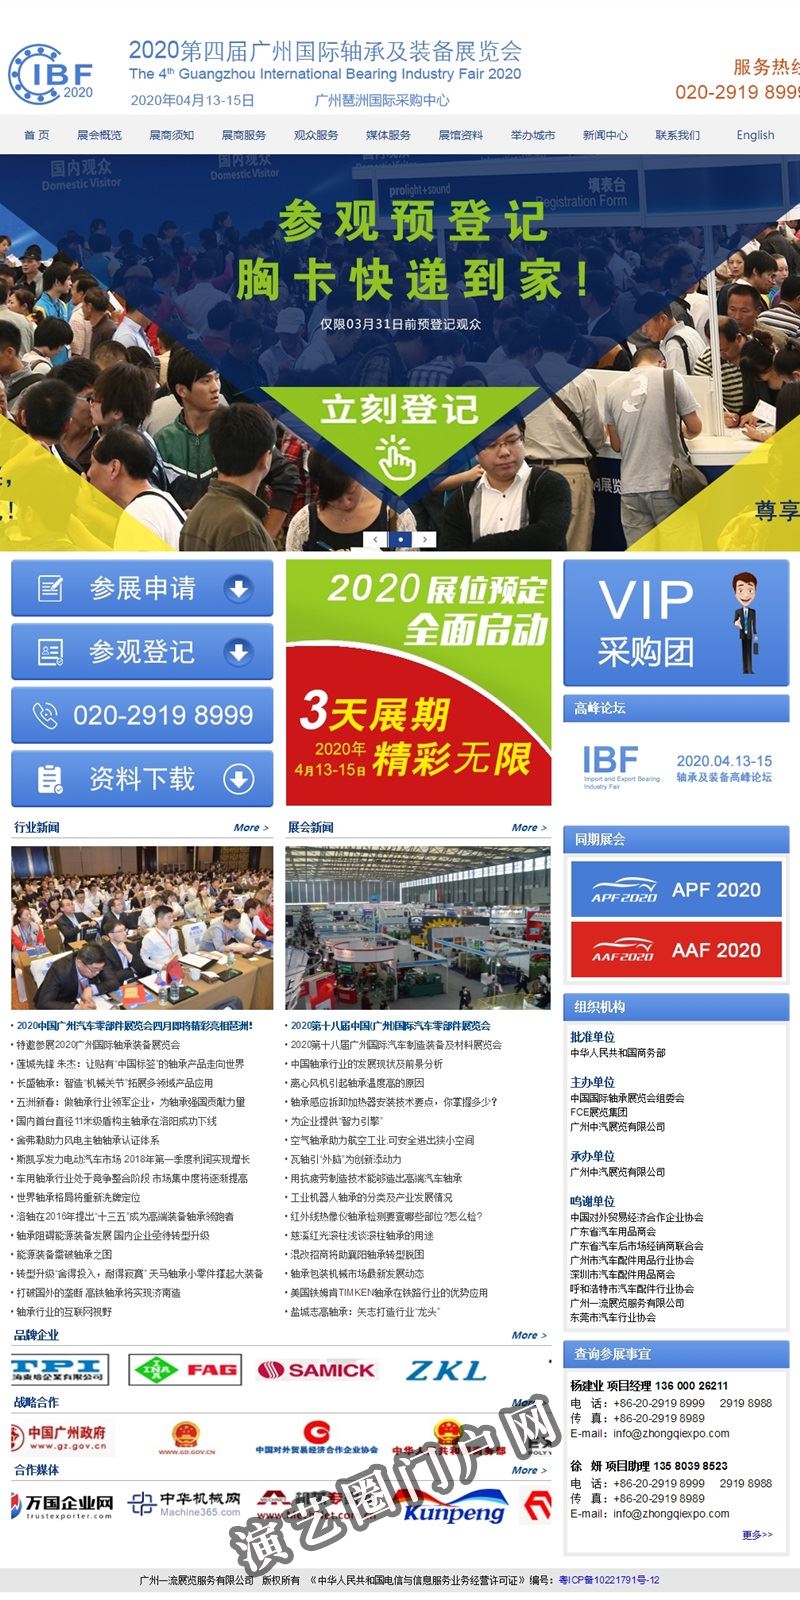 欢迎光临2020第四届广州国际轴承及装备展览会官网——IBF 2020，展示交易最佳选择，全球采购首选平台！截图